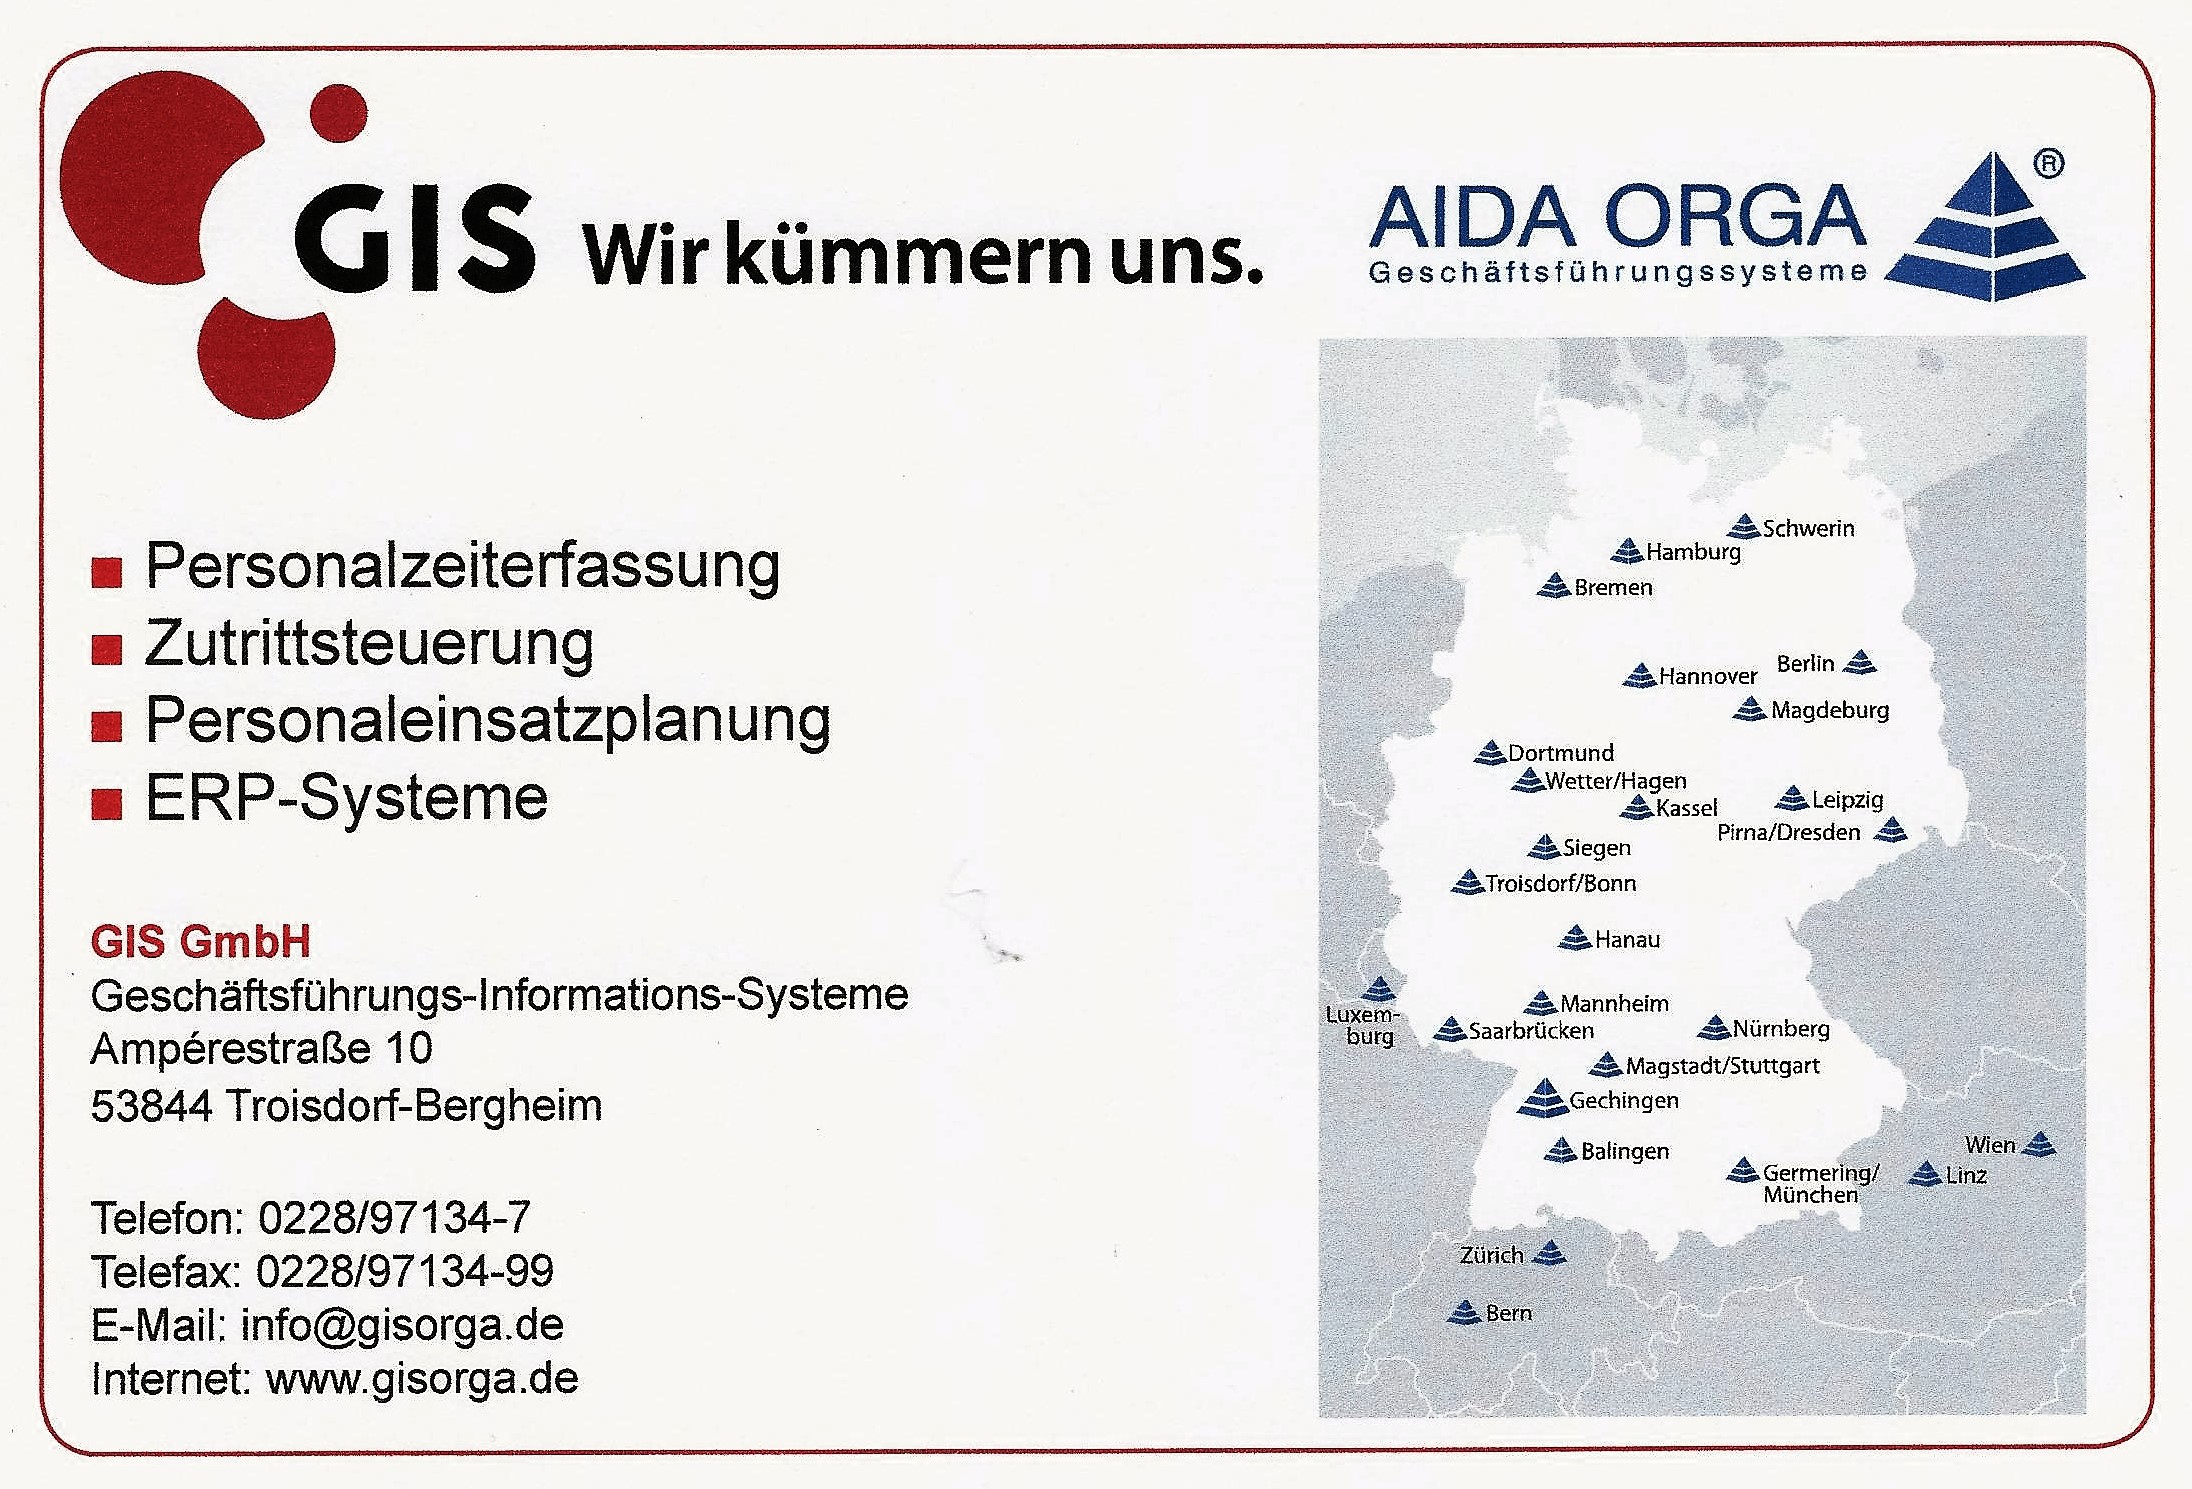 GIS GmbH